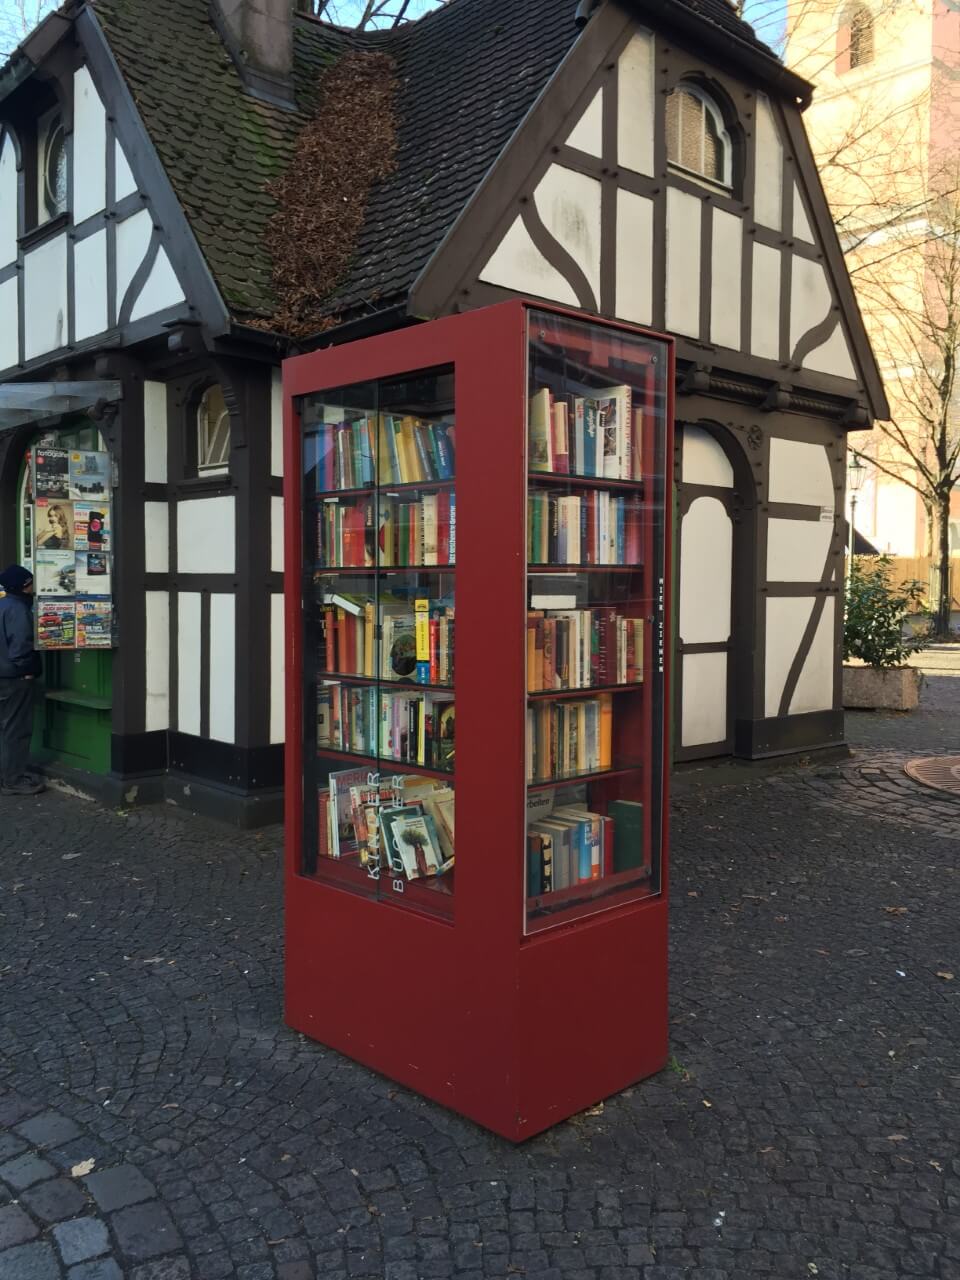 ドイツの街中に点在する世界一小さな図書館